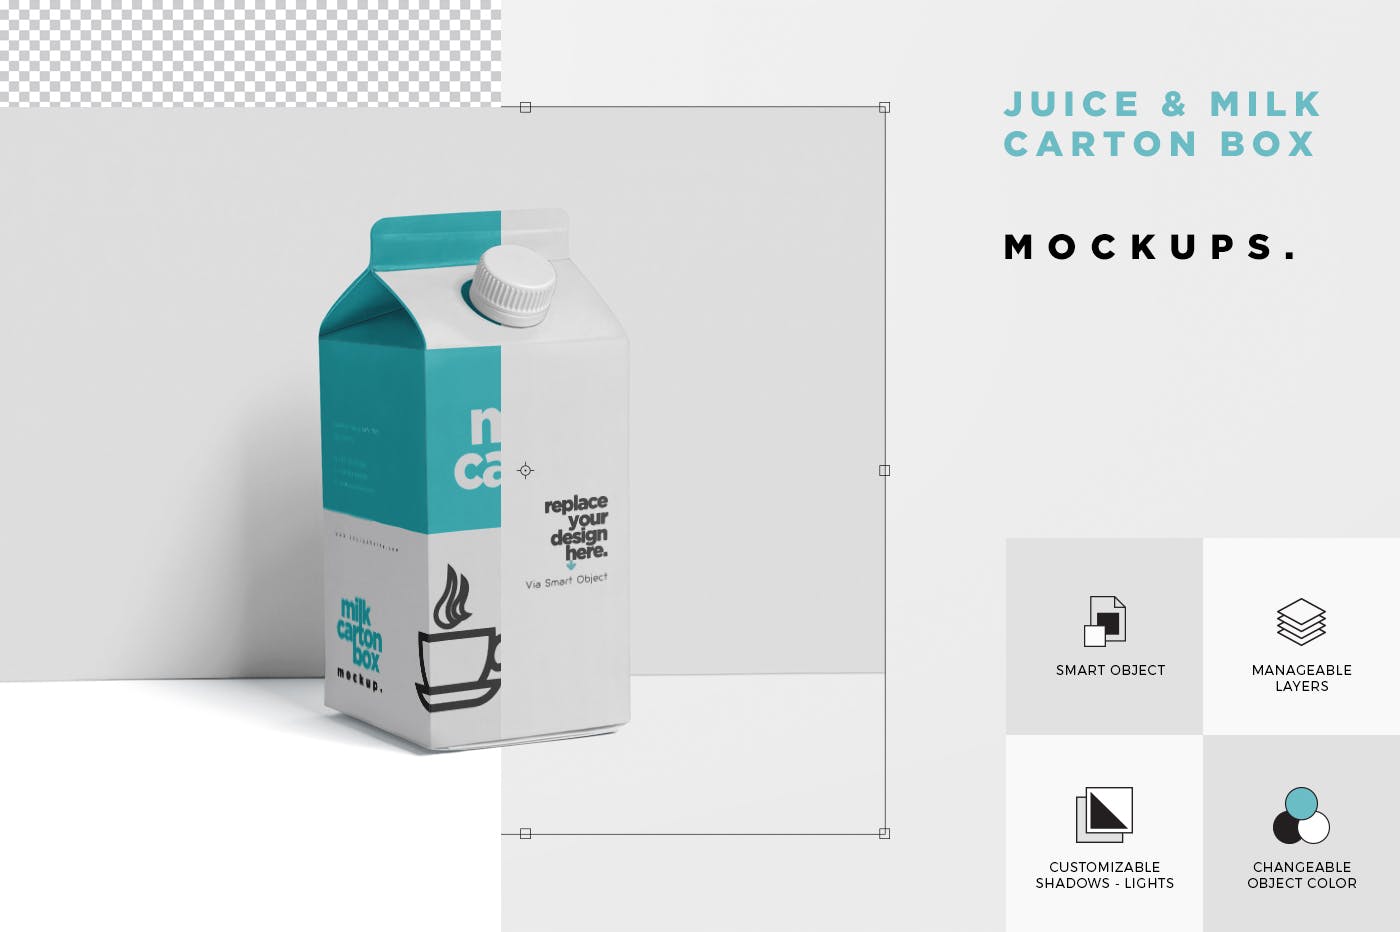 果汁/牛奶饮料纸盒包装效果图样机 Juice – Milk Mockup in 500ml Carton Box插图(5)